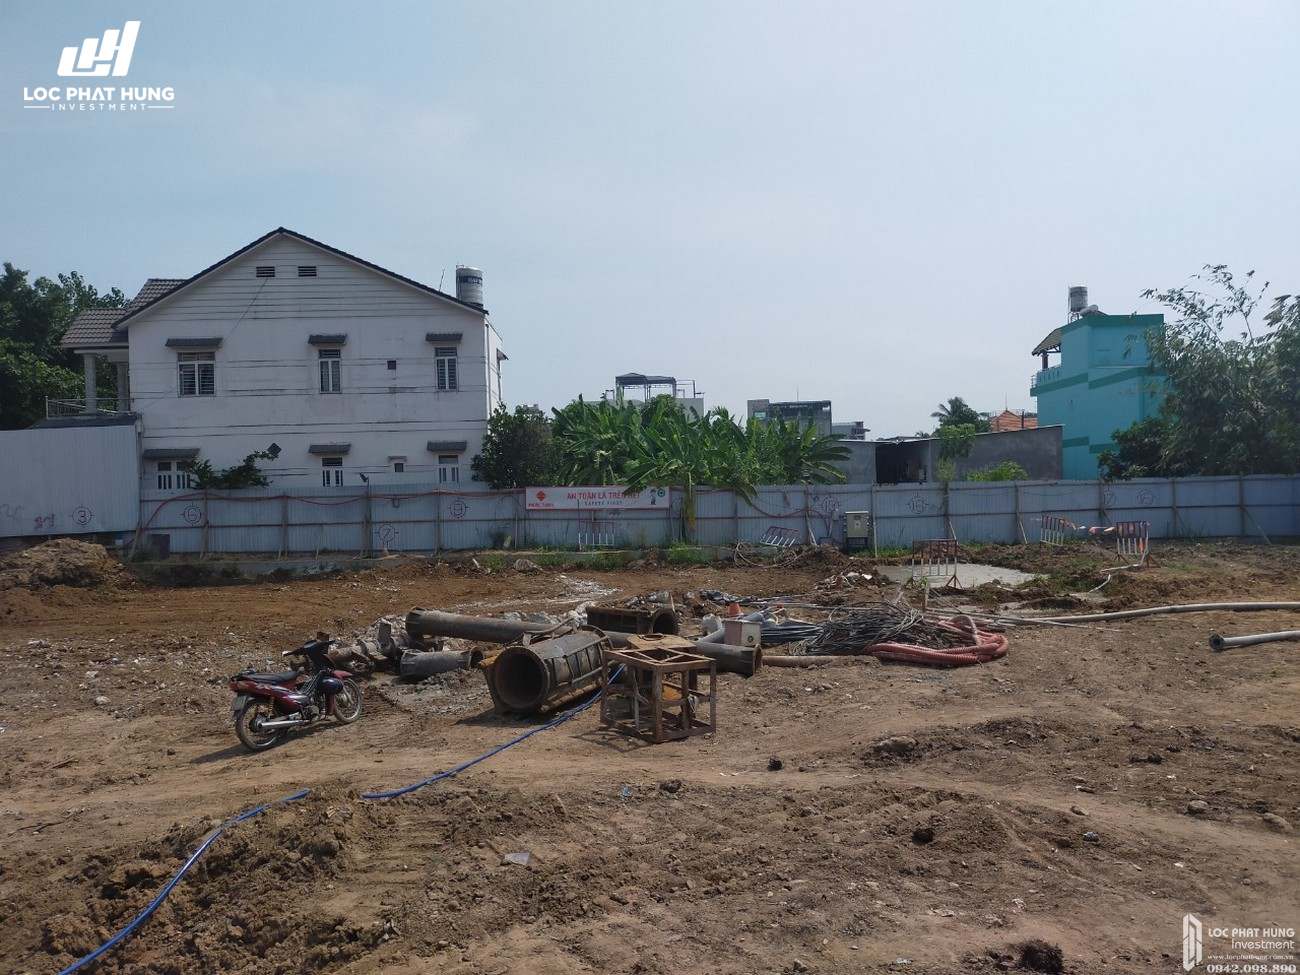 Tiến độ dự án căn hộ chung cư ST Moritz Thu Duc Đường Phạm Văn Đồng chủ đầu tư Đất Xanh 23/04/2020